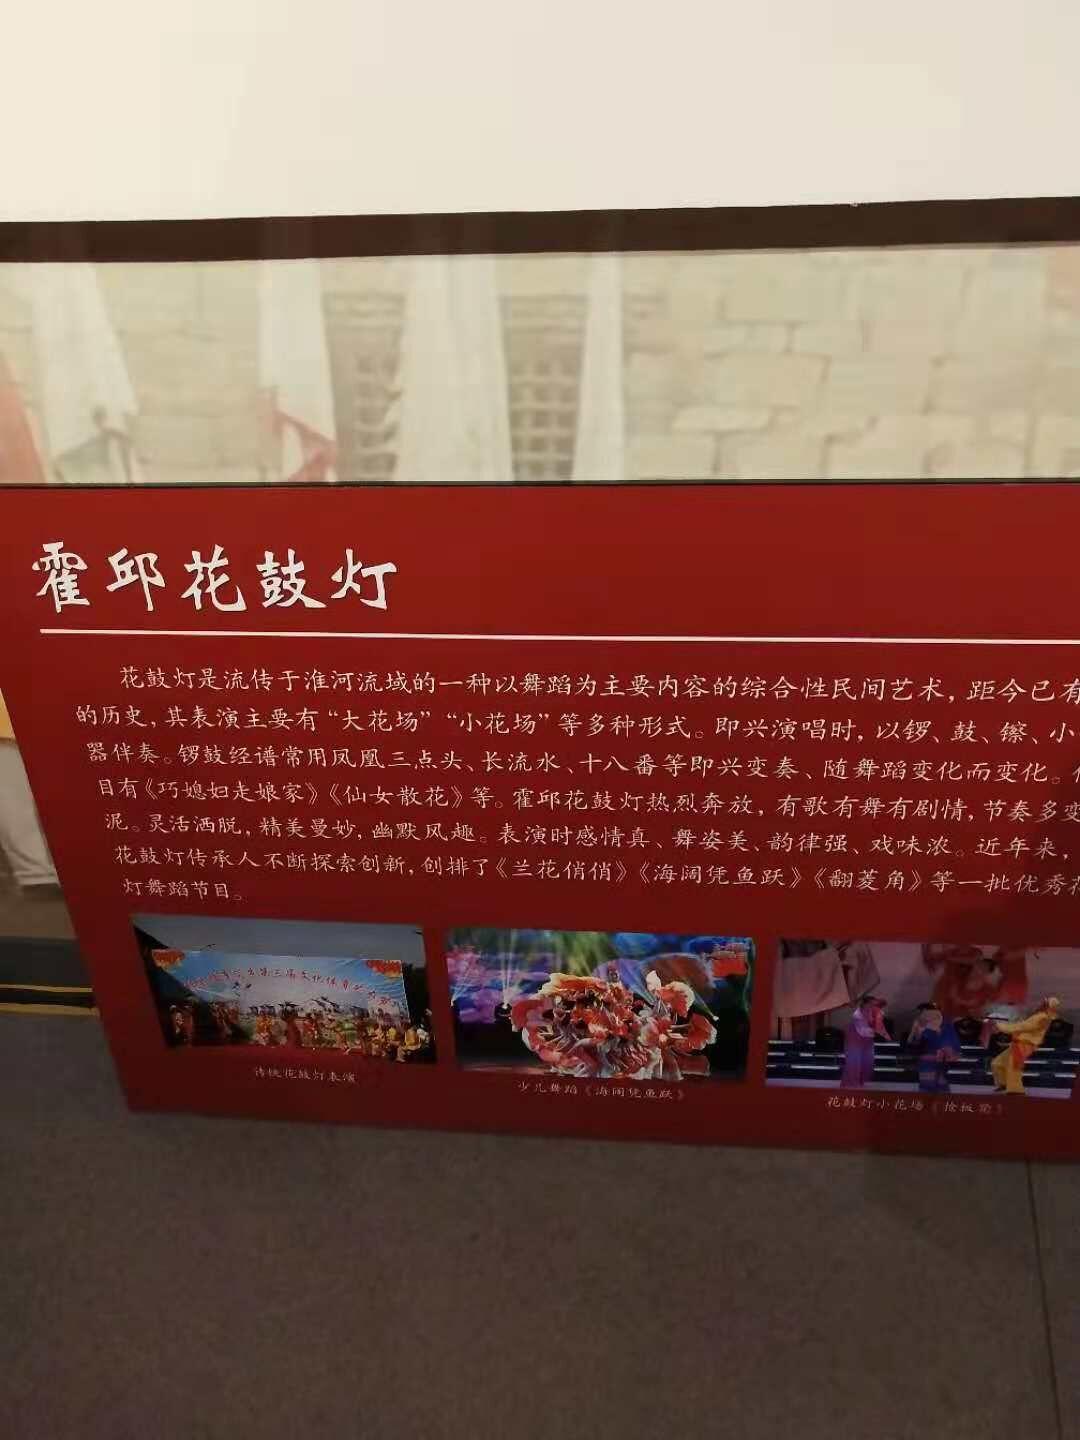 上海晓东展馆展板板画制作中心_拉米娜版画_版画拉米